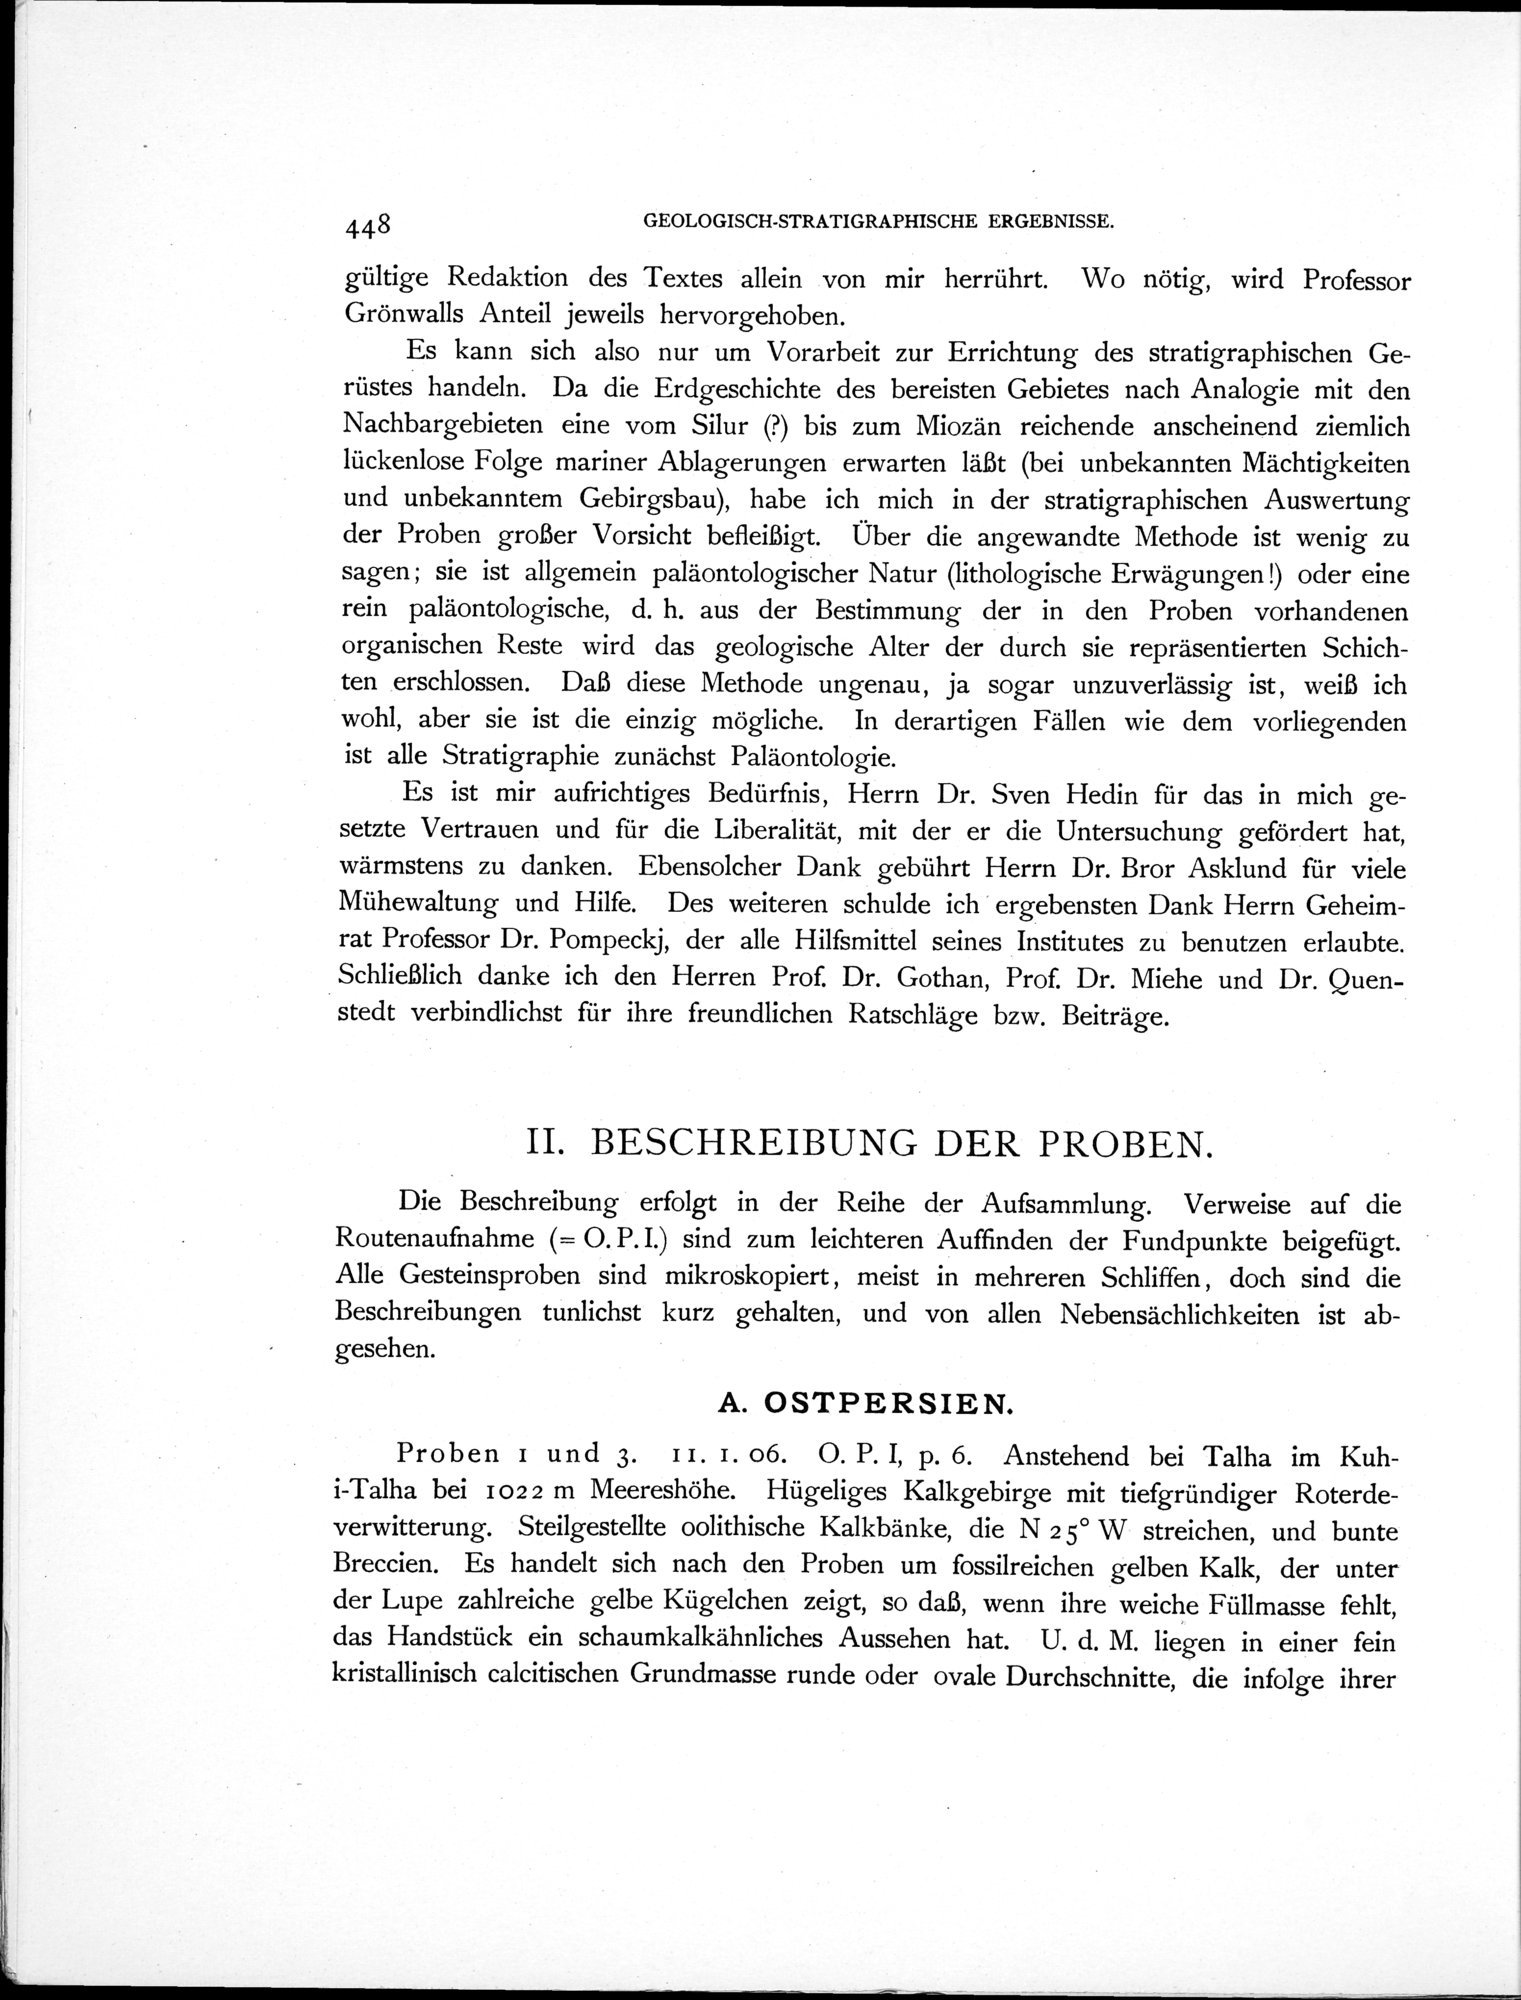 Eine Routenaufnahme durch Ostpersien : vol.2 / Page 552 (Grayscale High Resolution Image)